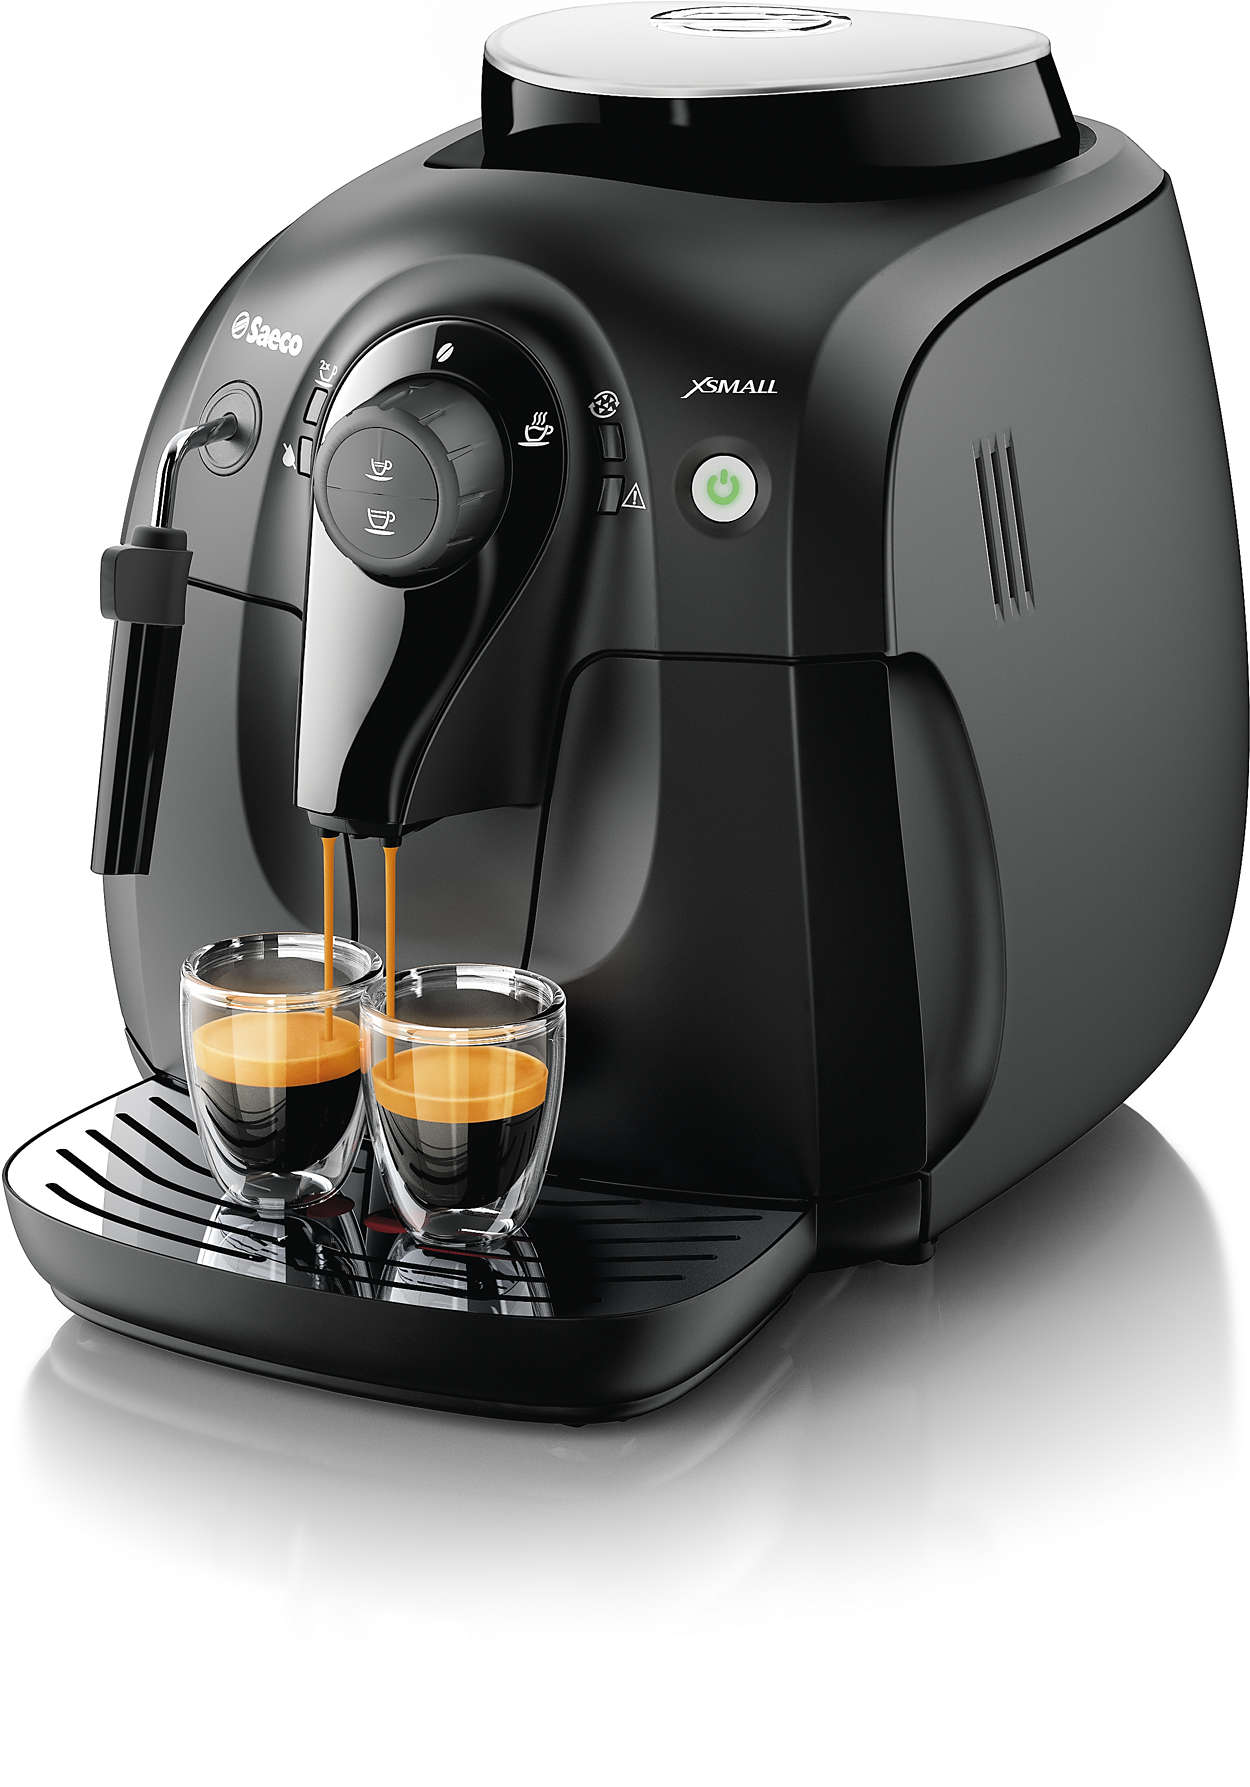 Erleben Sie das Aroma der Kaffeebohnen Ihres Lieblingskaffees.